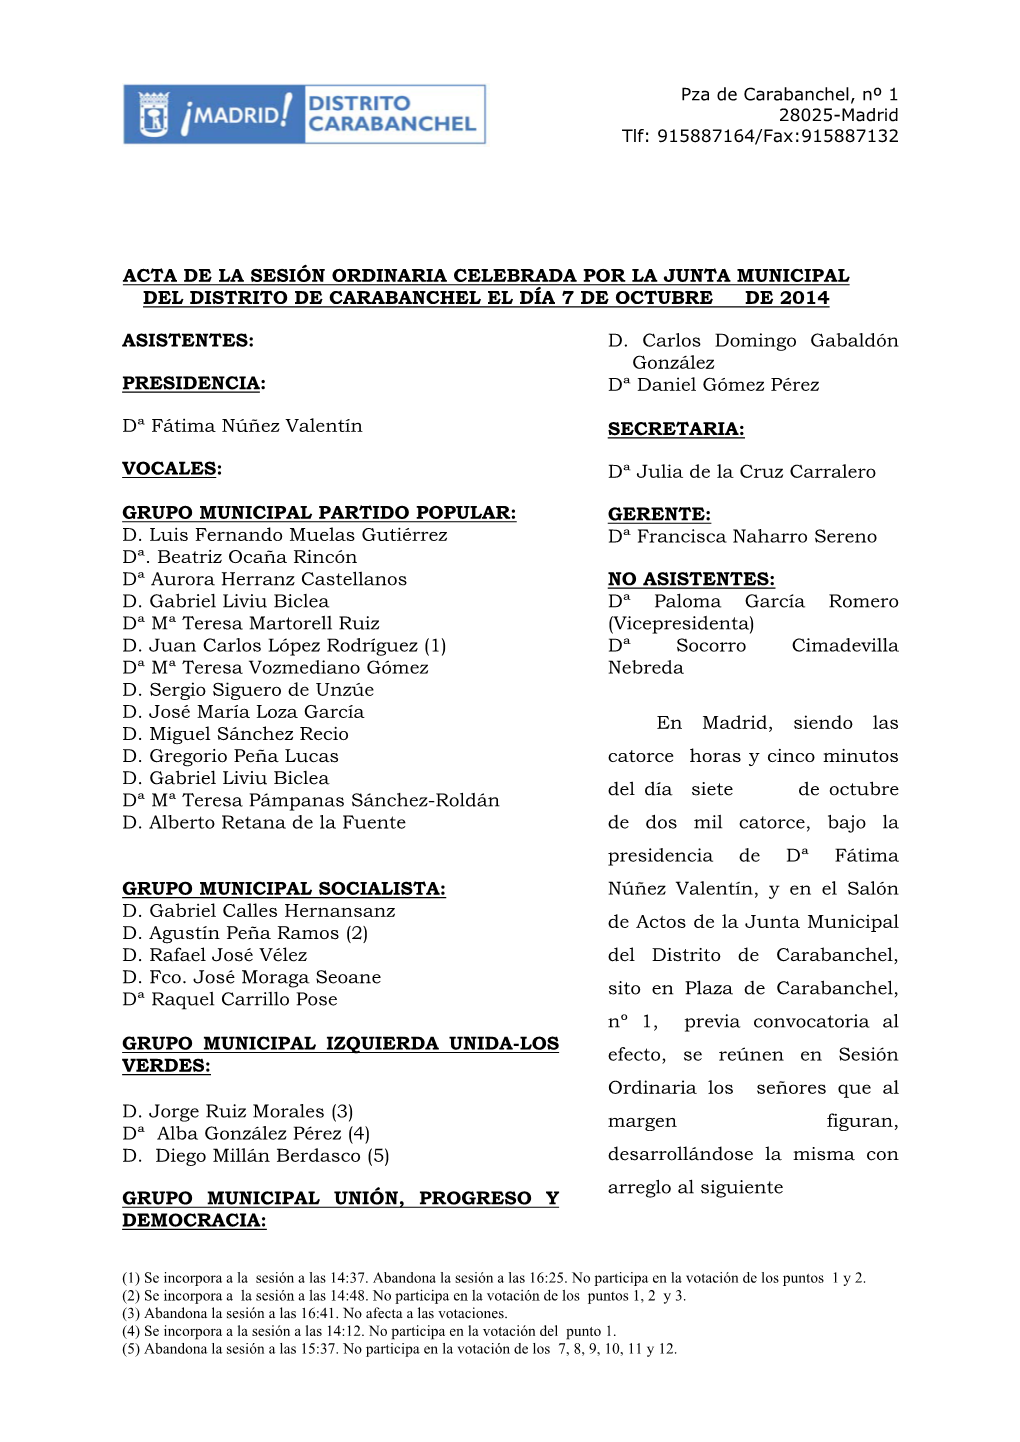 Acta De La Sesión Ordinaria Celebrada Por La Junta Municipal Del Distrito De Carabanchel El Día 7 De Octubre De 2014